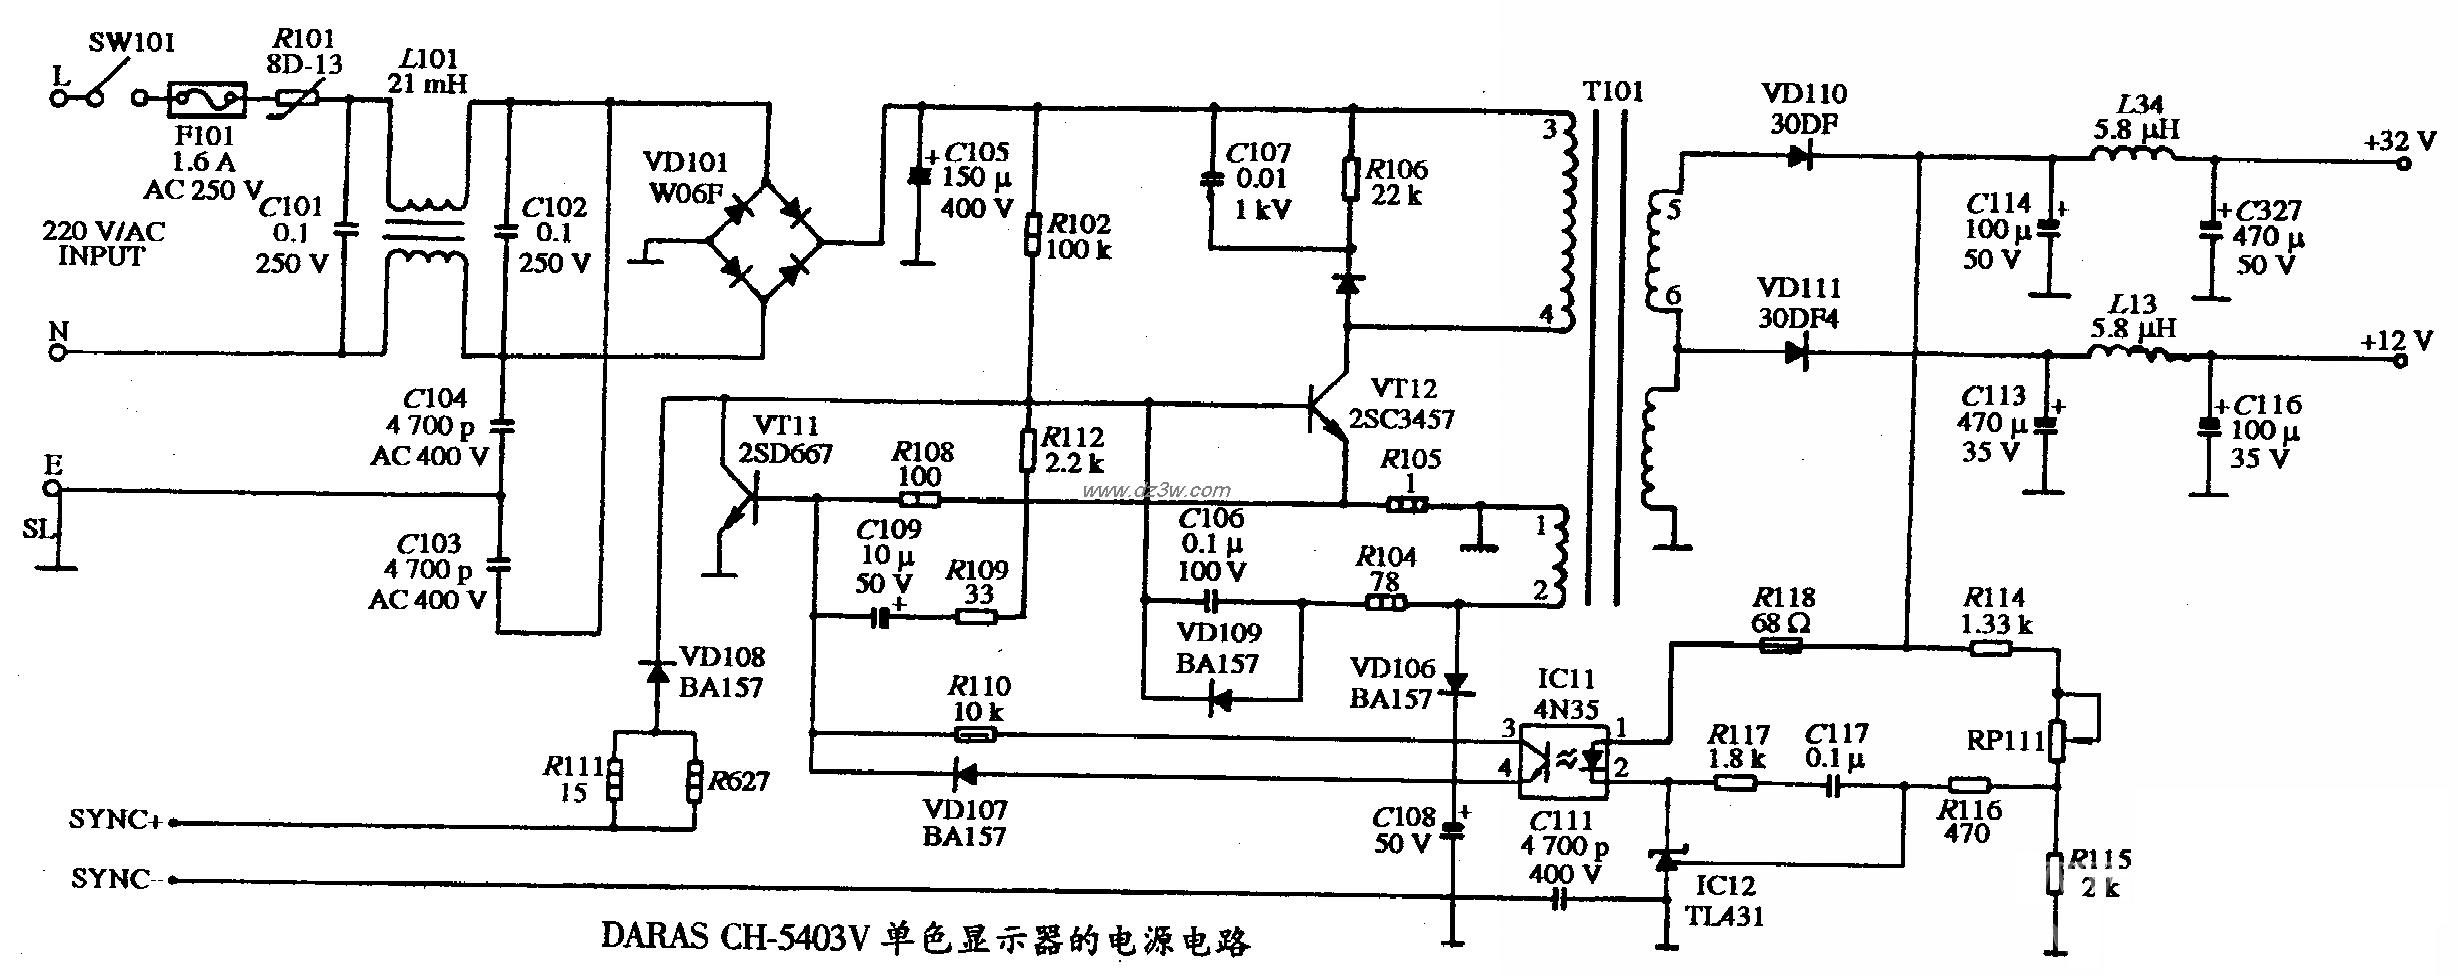 DARAS CH-5403V型單色顯示器的電源電路圖